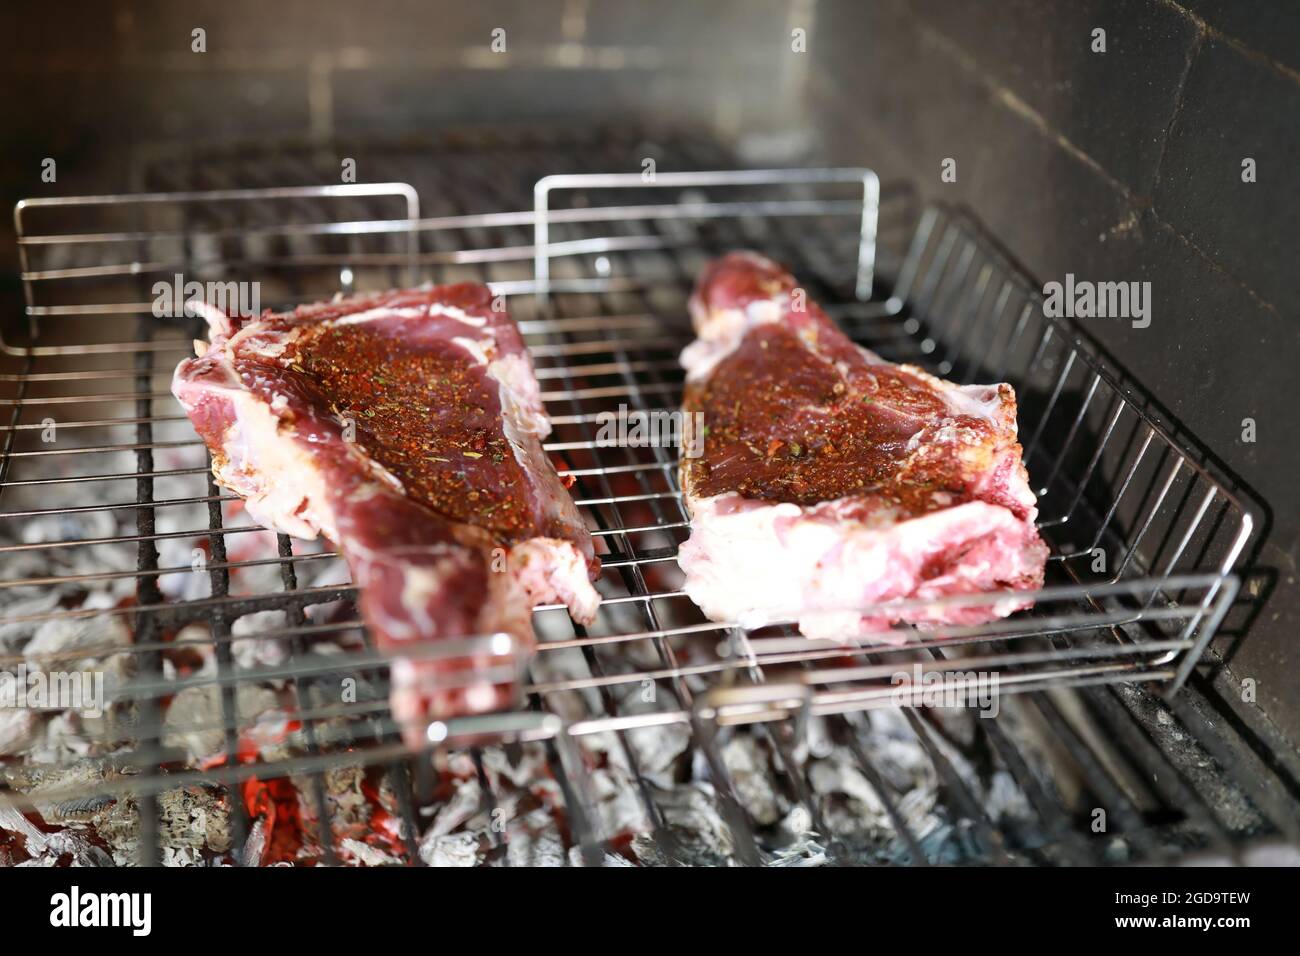 Kochen von Rindersteaks über Holzkohle im Kamin Stockfotografie - Alamy